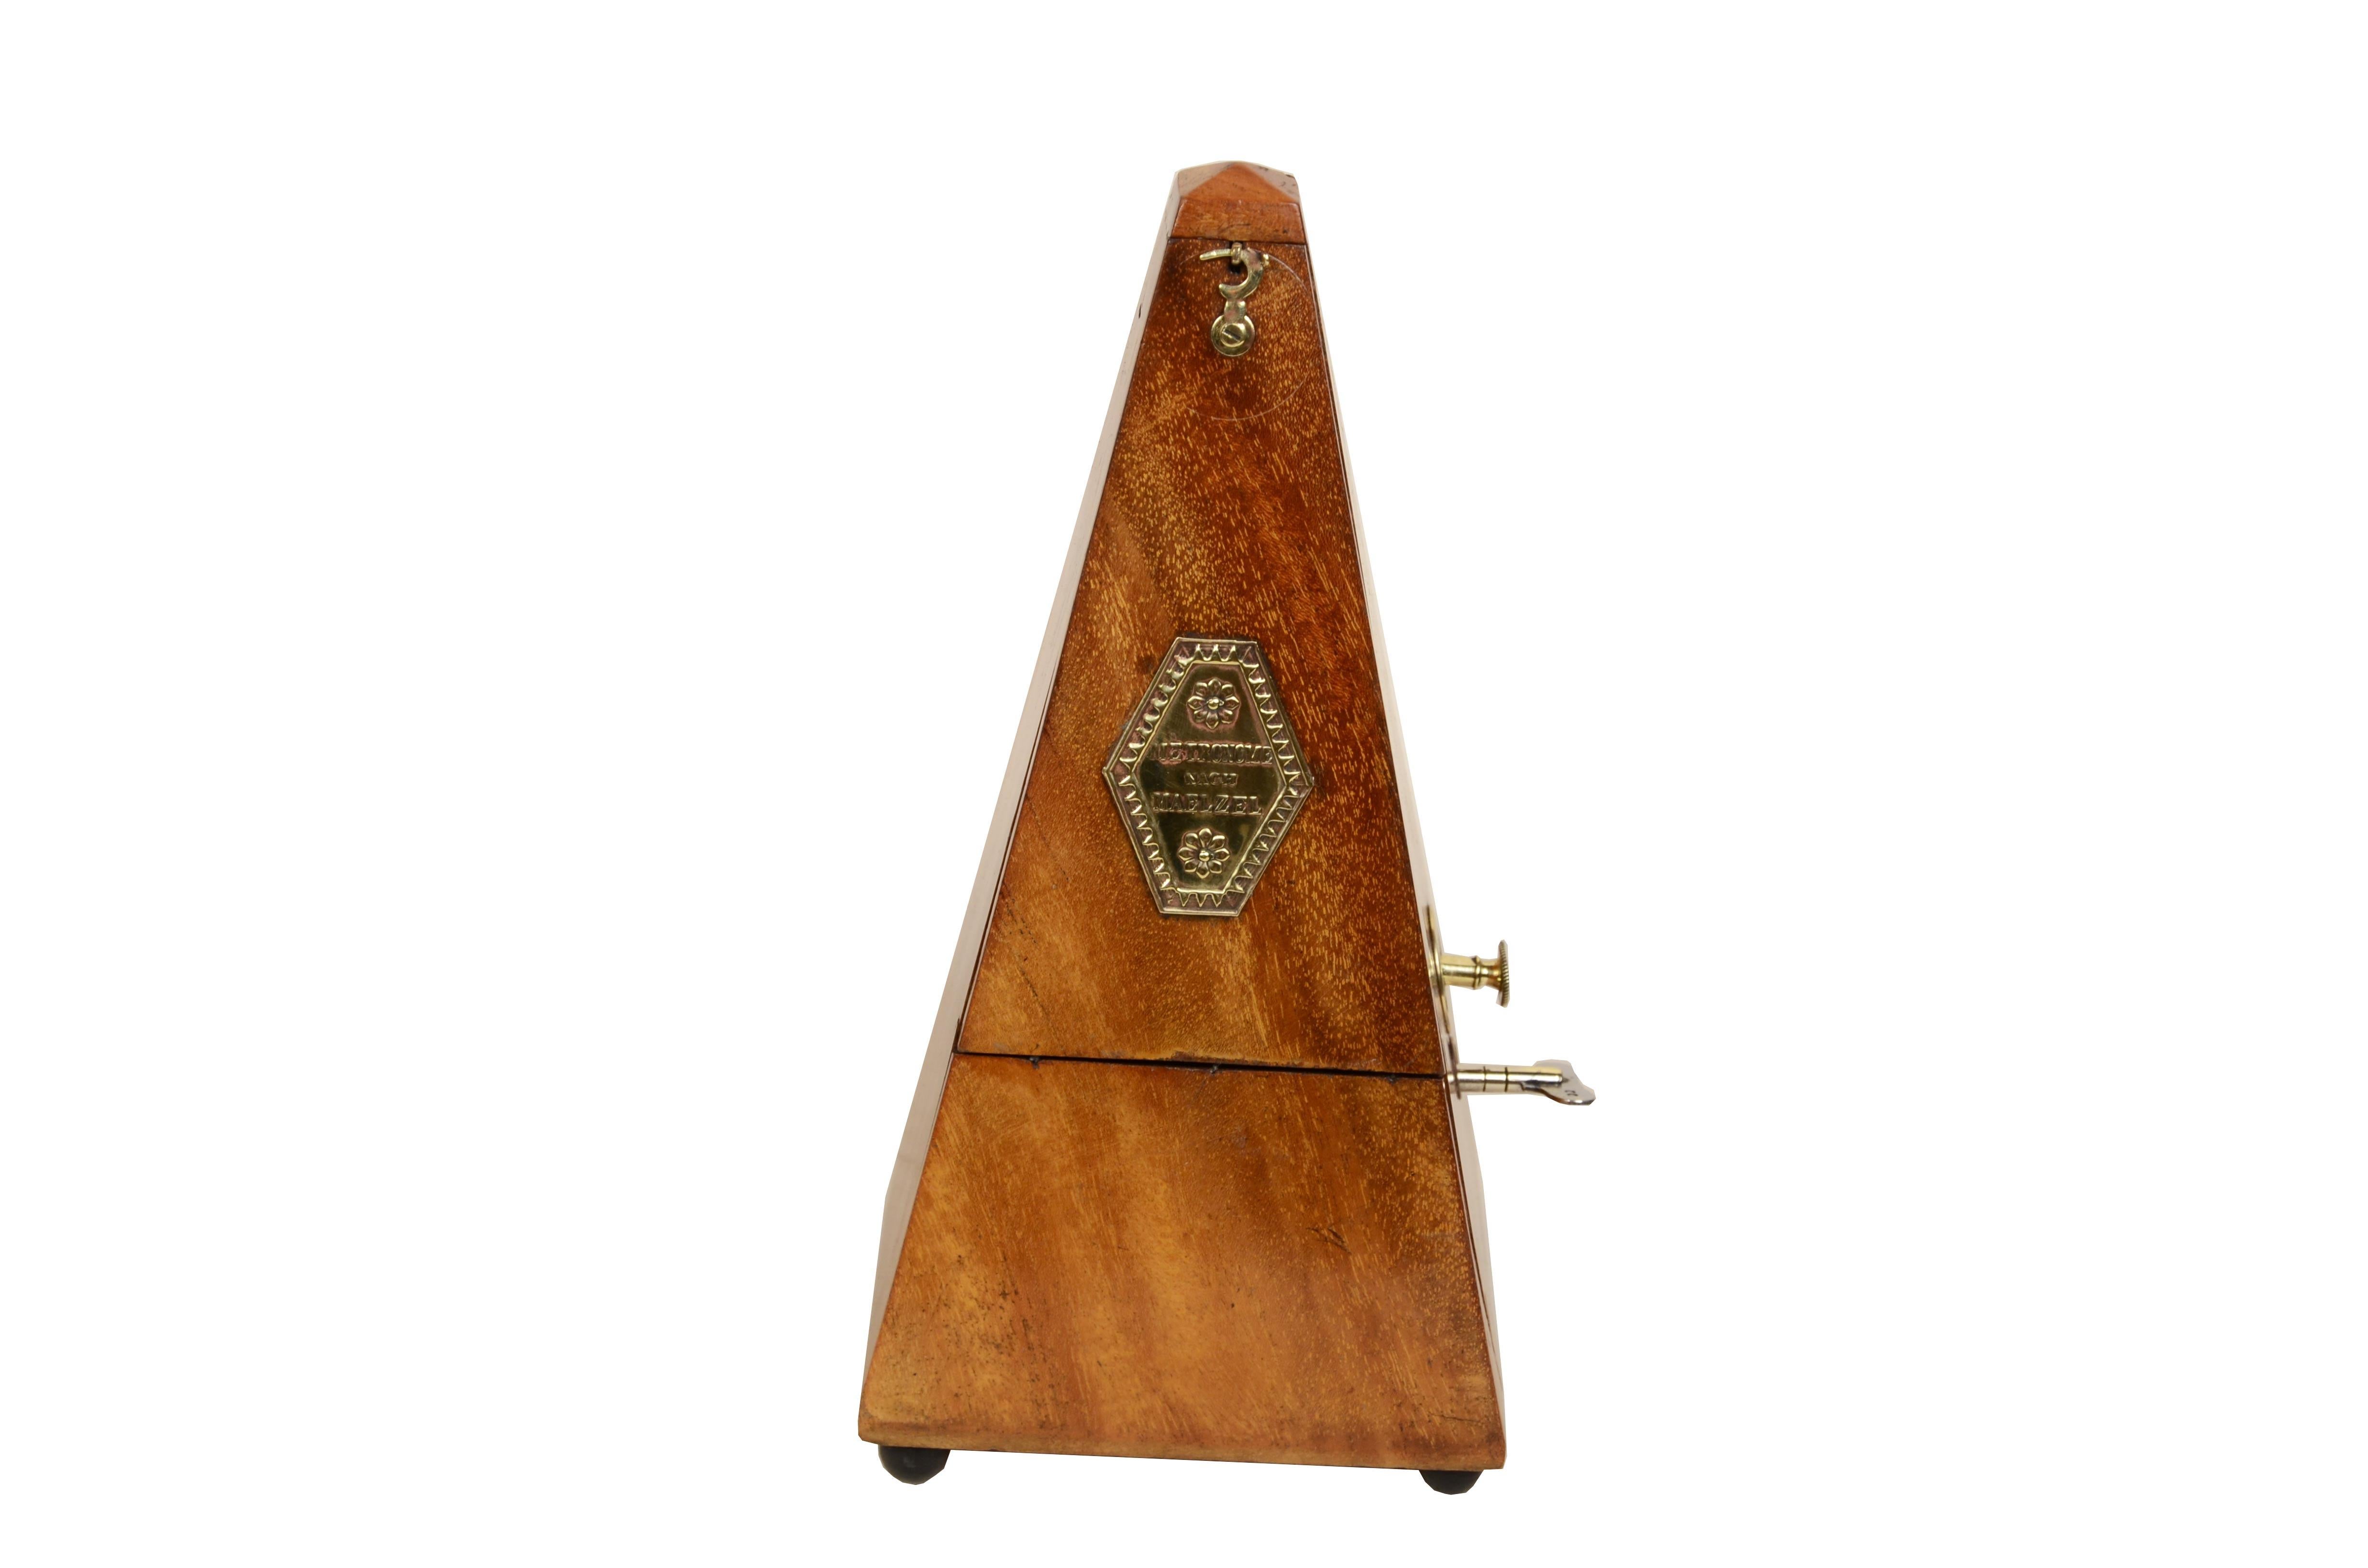 Metronom-System  Johan Maelzel (1772-1838) aus den frühen 1900er Jahren. Es handelt sich dabei um ein Instrument zur Messung des Tempos von Musik, wobei das Geräusch des Pendels genau die Geschwindigkeit angibt, mit der die Musik gespielt wird.  Das